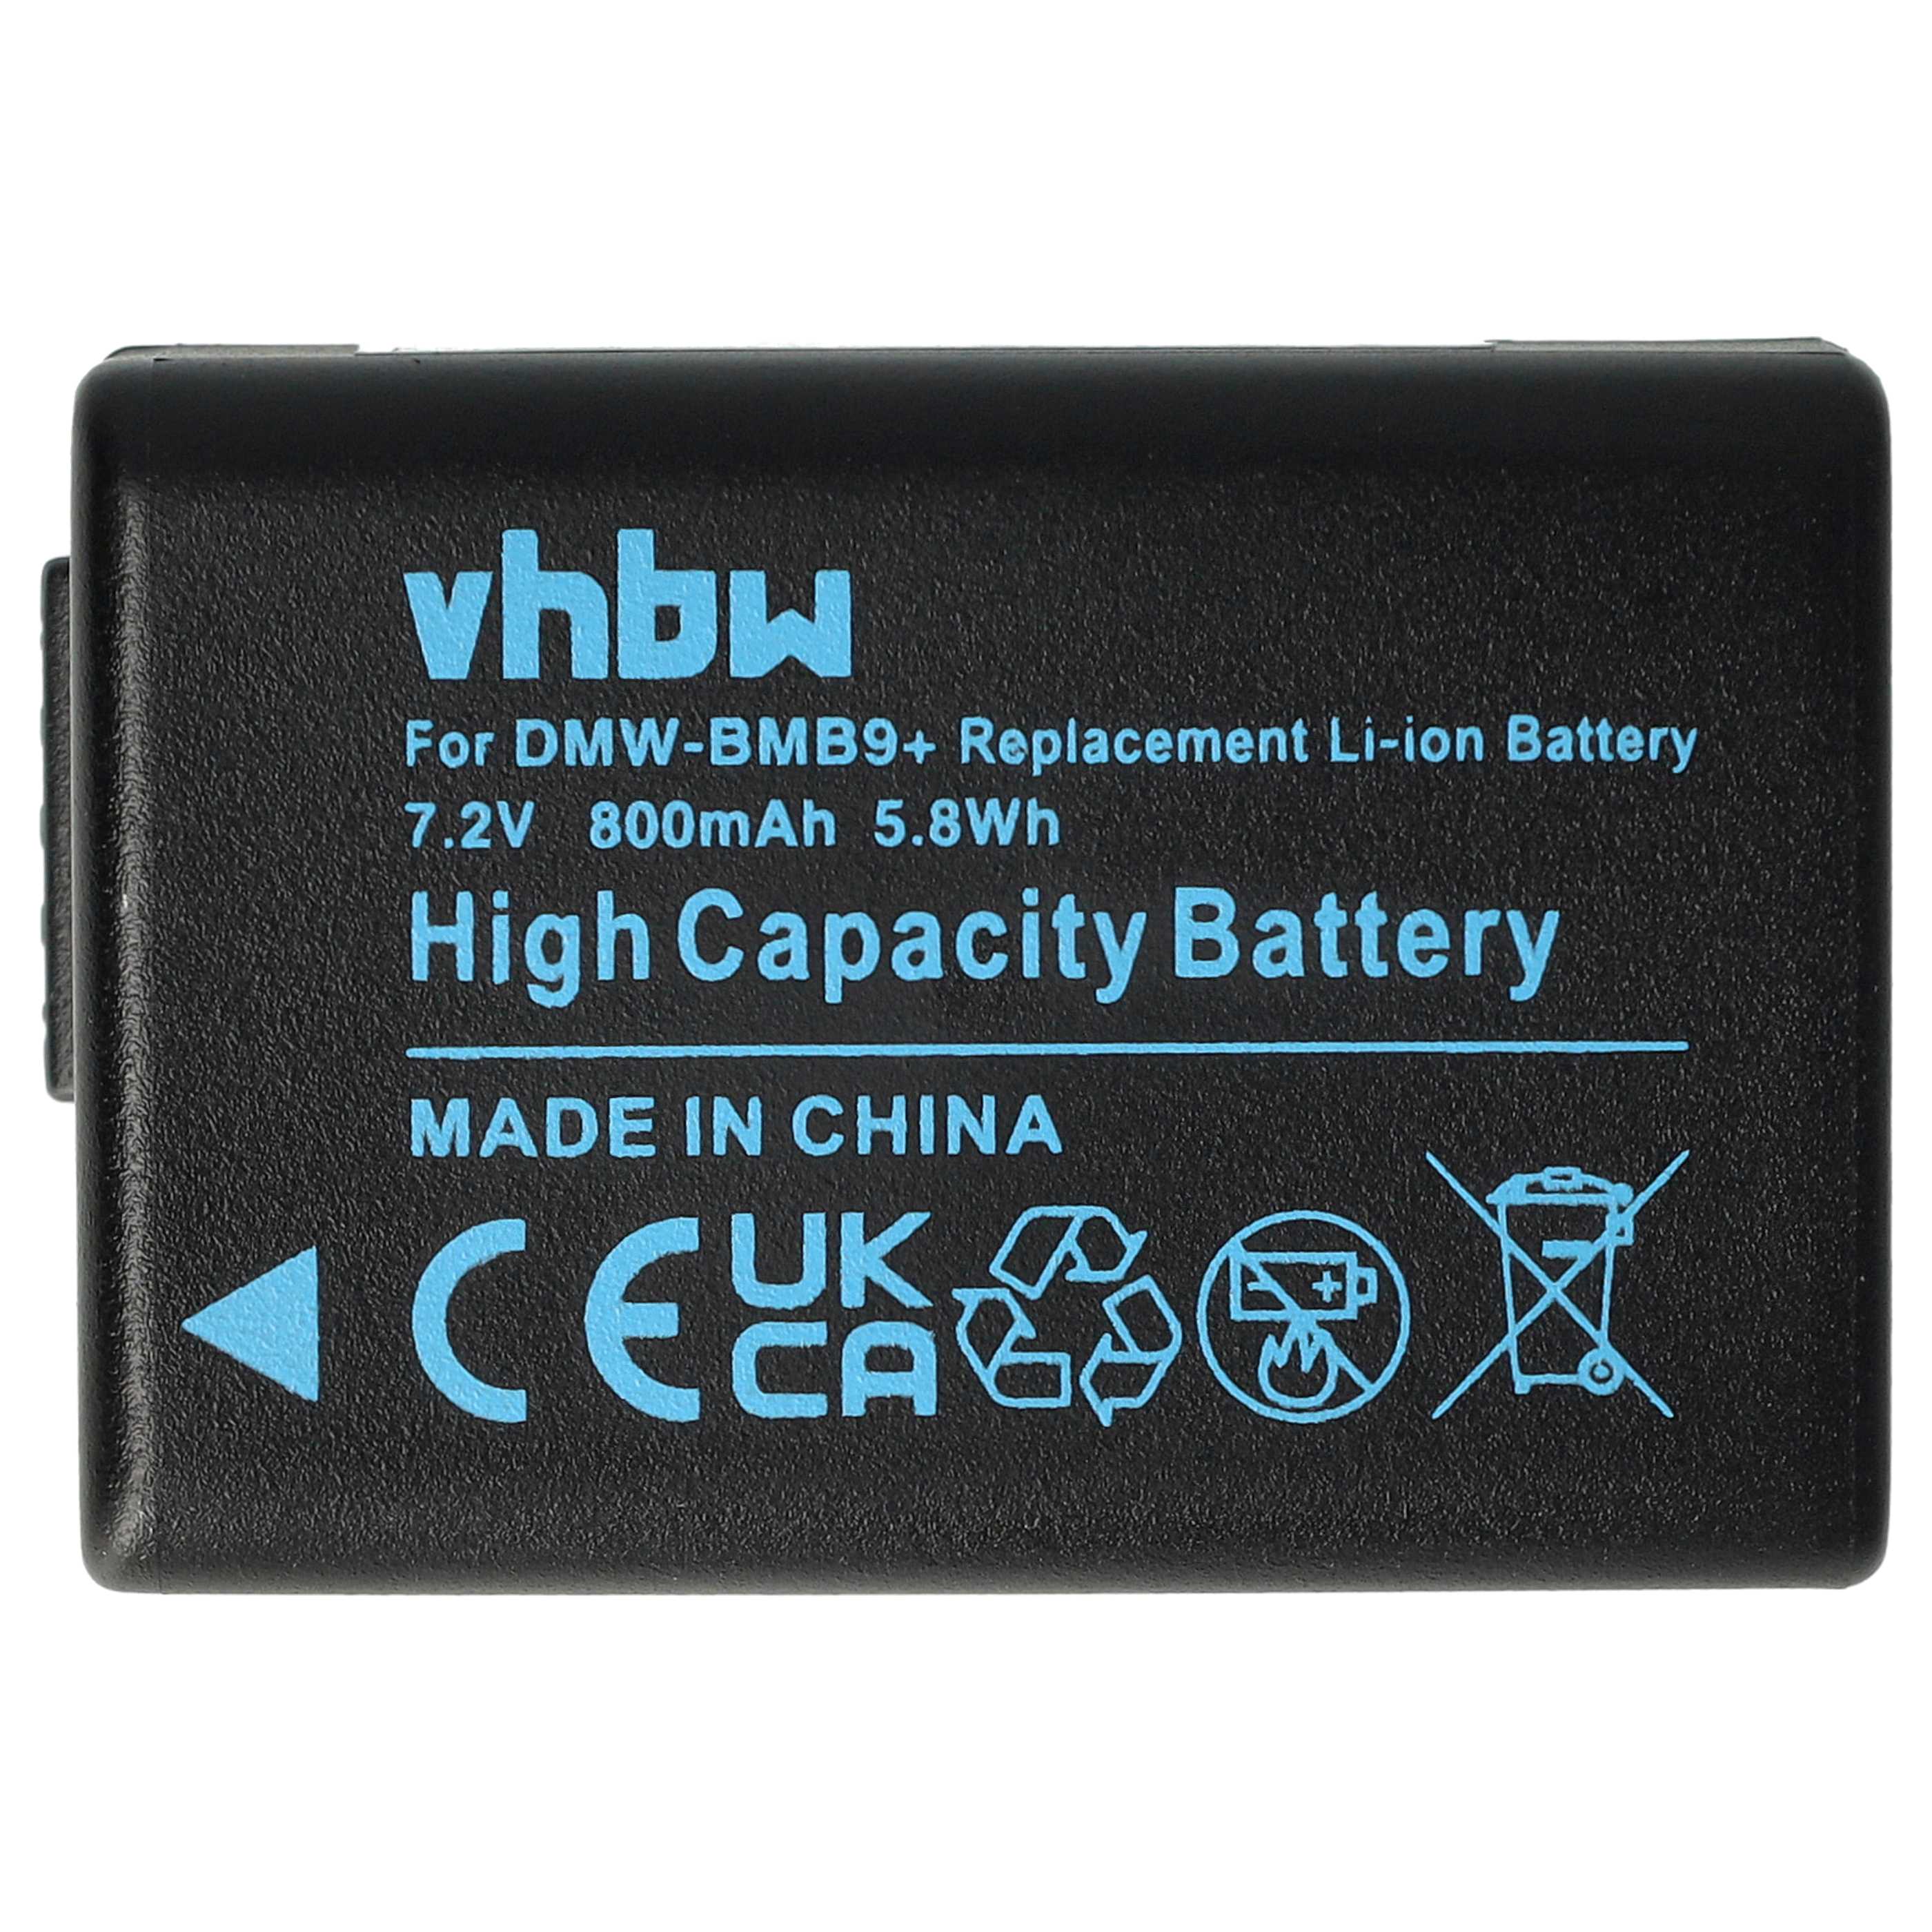 Batterie remplace Leica BP-DC9E, BP-DC9 pour appareil photo - 800mAh 7,2V Li-ion